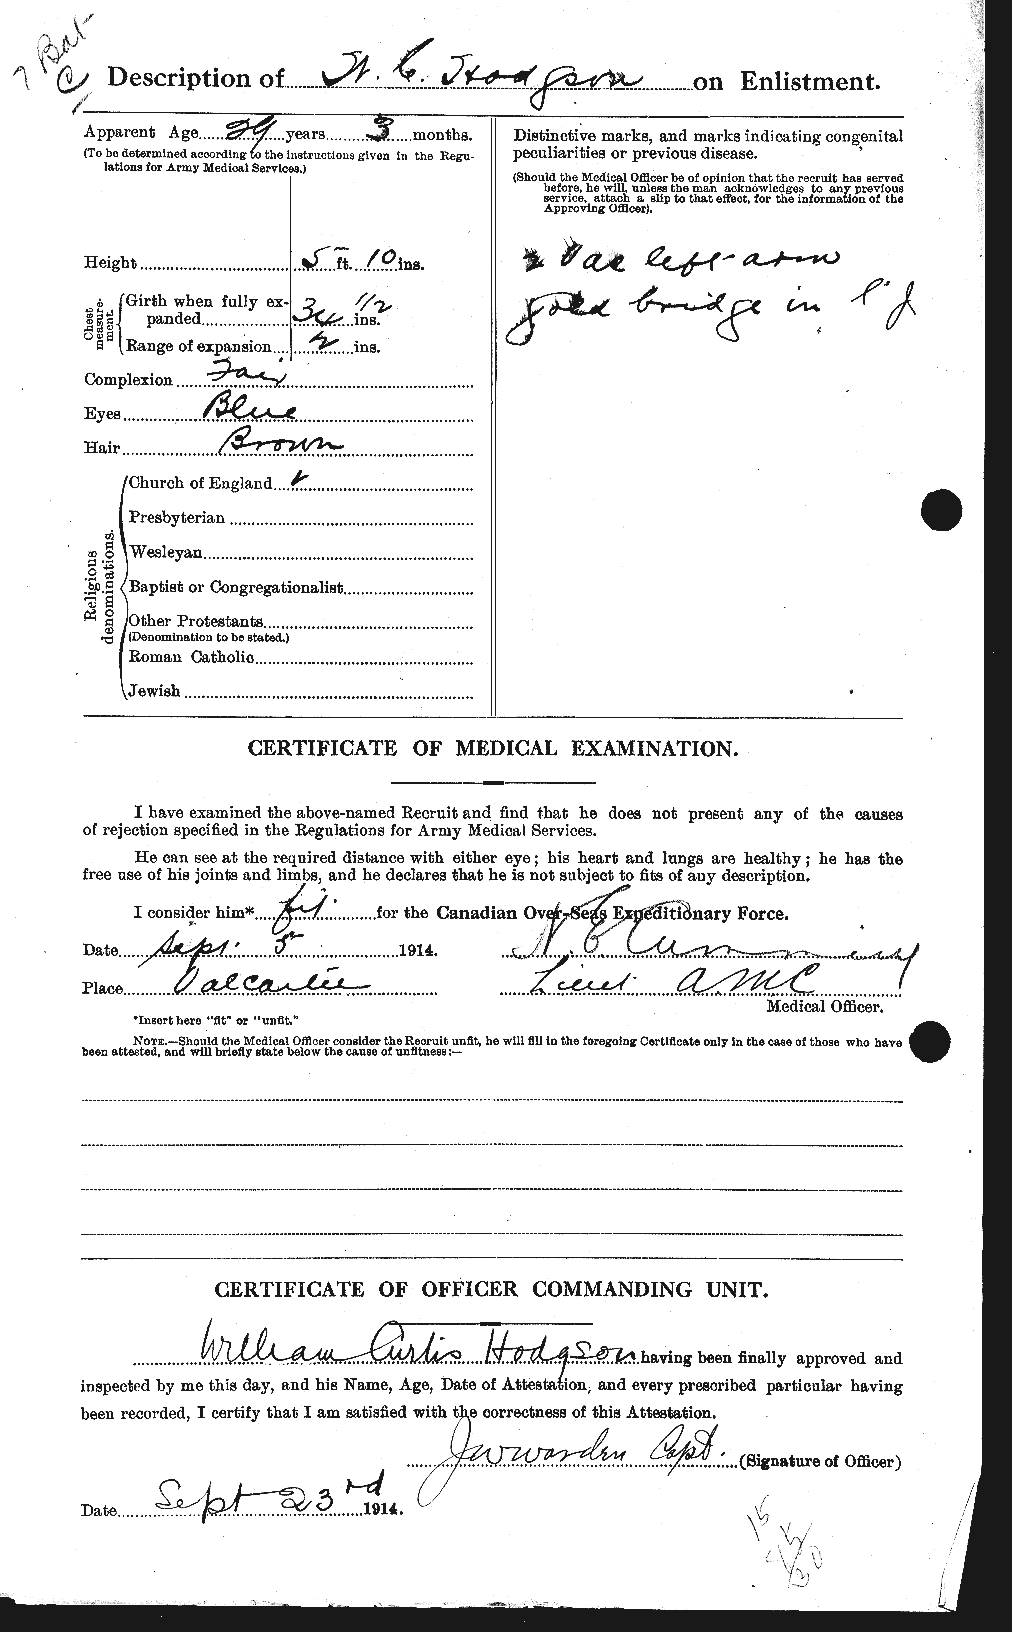 Dossiers du Personnel de la Première Guerre mondiale - CEC 395569b